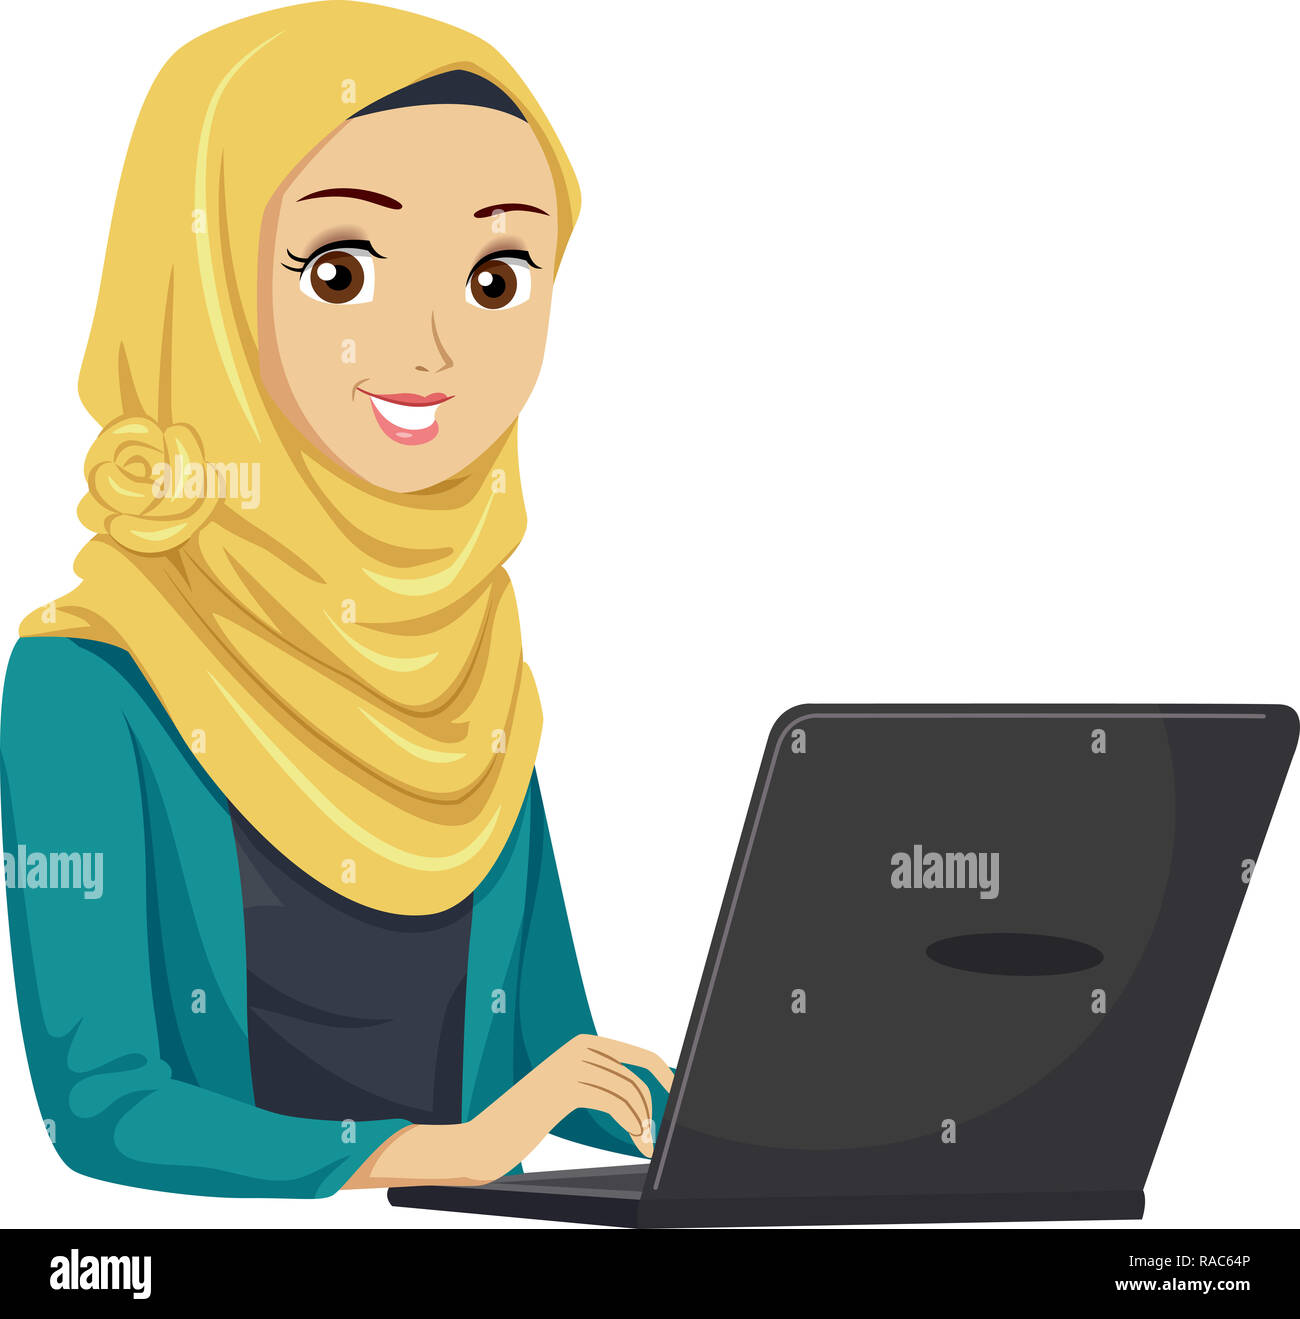 Illustrazione di un adolescente ragazza musulmana studente utilizzando un computer portatile Foto Stock